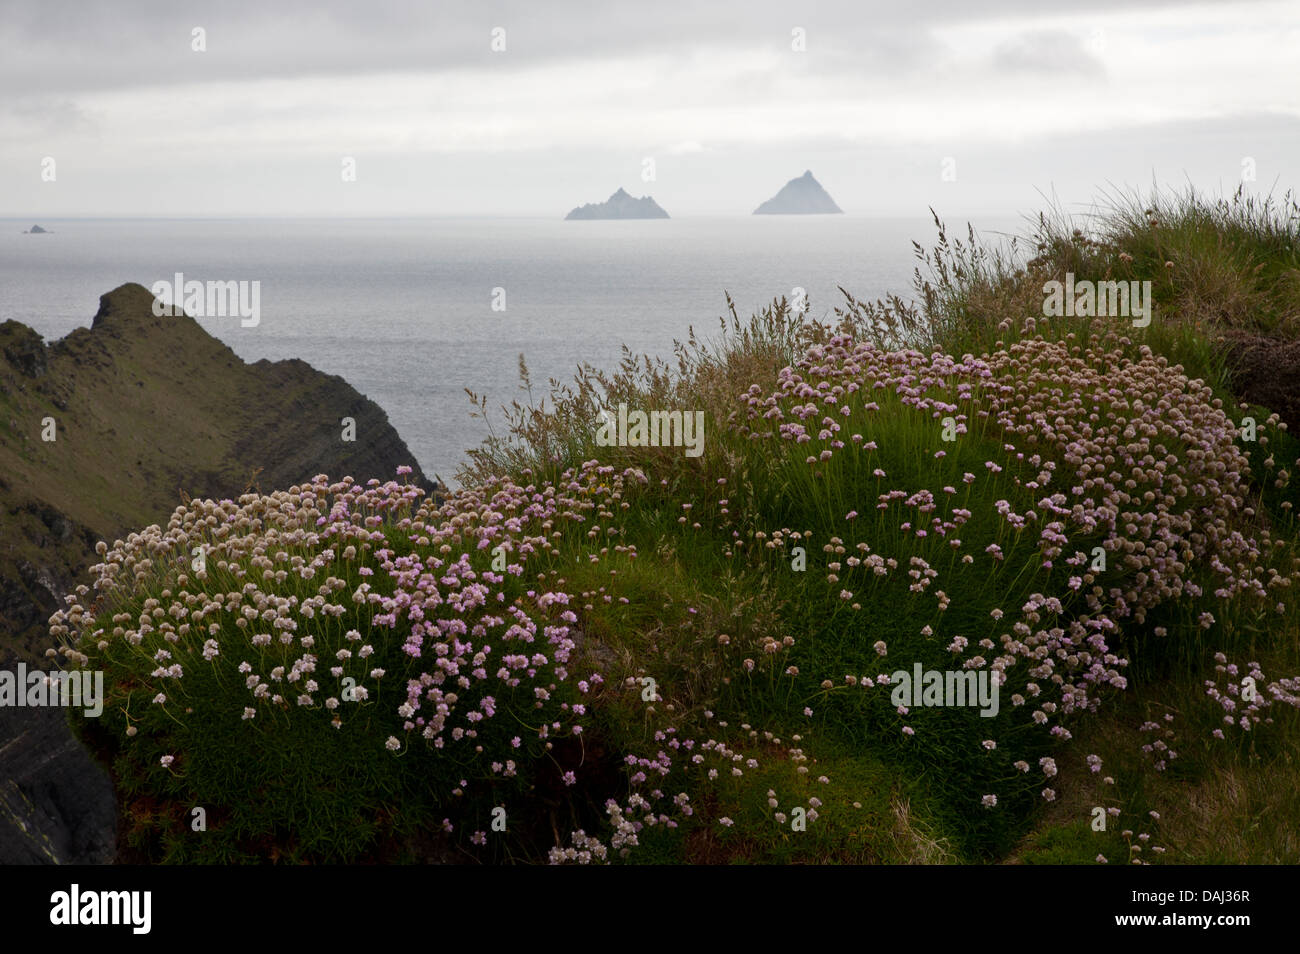 Vue lointaine des îles Blasket dans le brouillard avec des fleurs au premier plan au large de la côte de la péninsule de Dingle, Irlande, Europe, paix, irlandais brumeux Banque D'Images